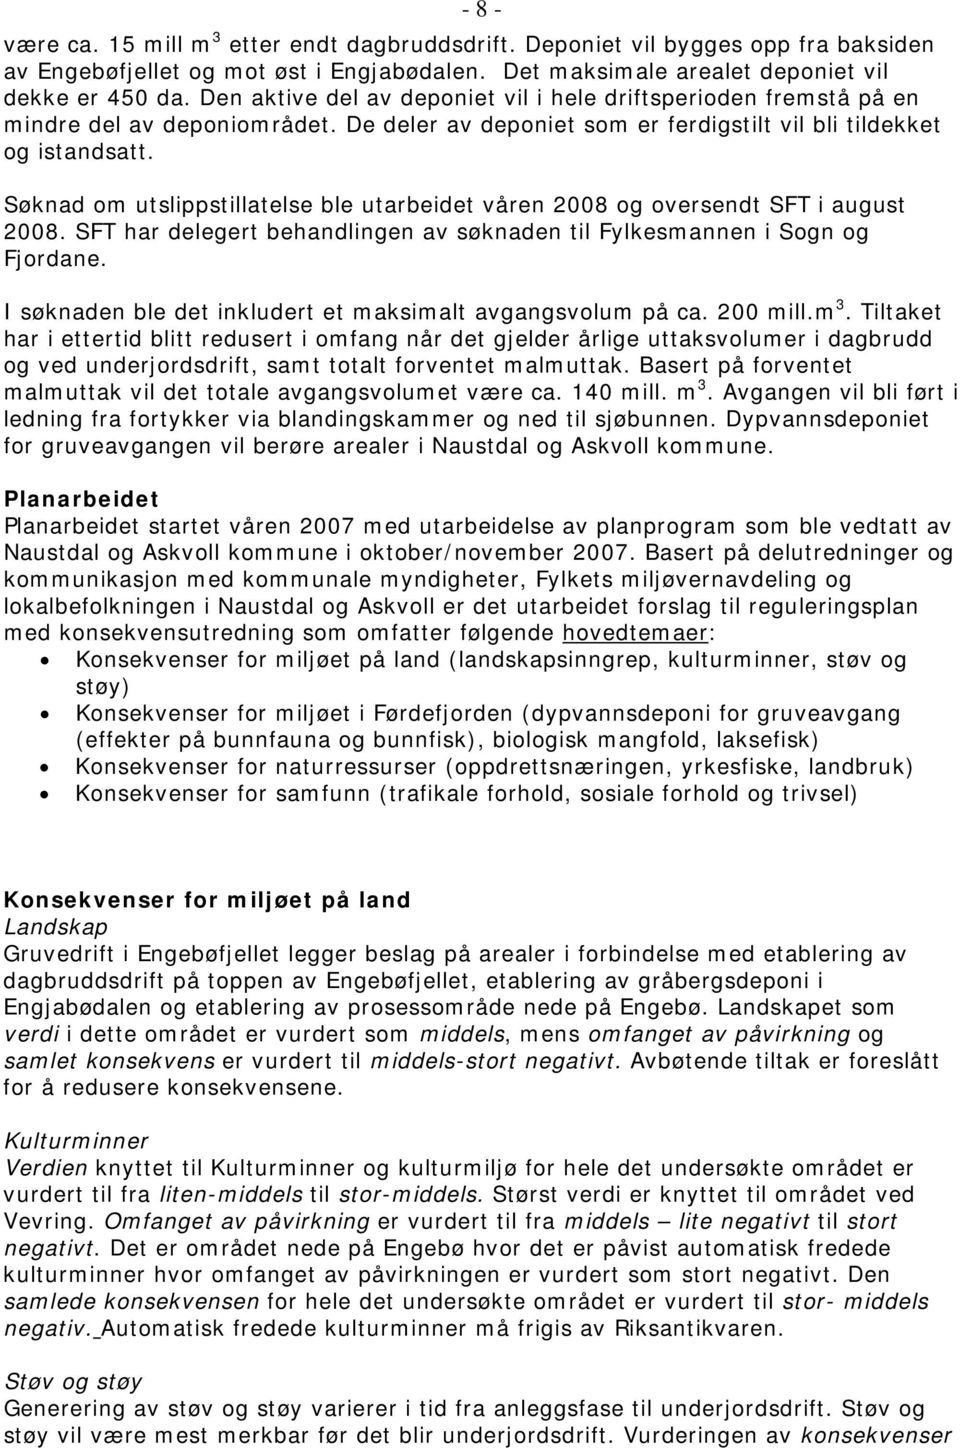 Søknad om utslippstillatelse ble utarbeidet våren 2008 og oversendt SFT i august 2008. SFT har delegert behandlingen av søknaden til Fylkesmannen i Sogn og Fjordane.